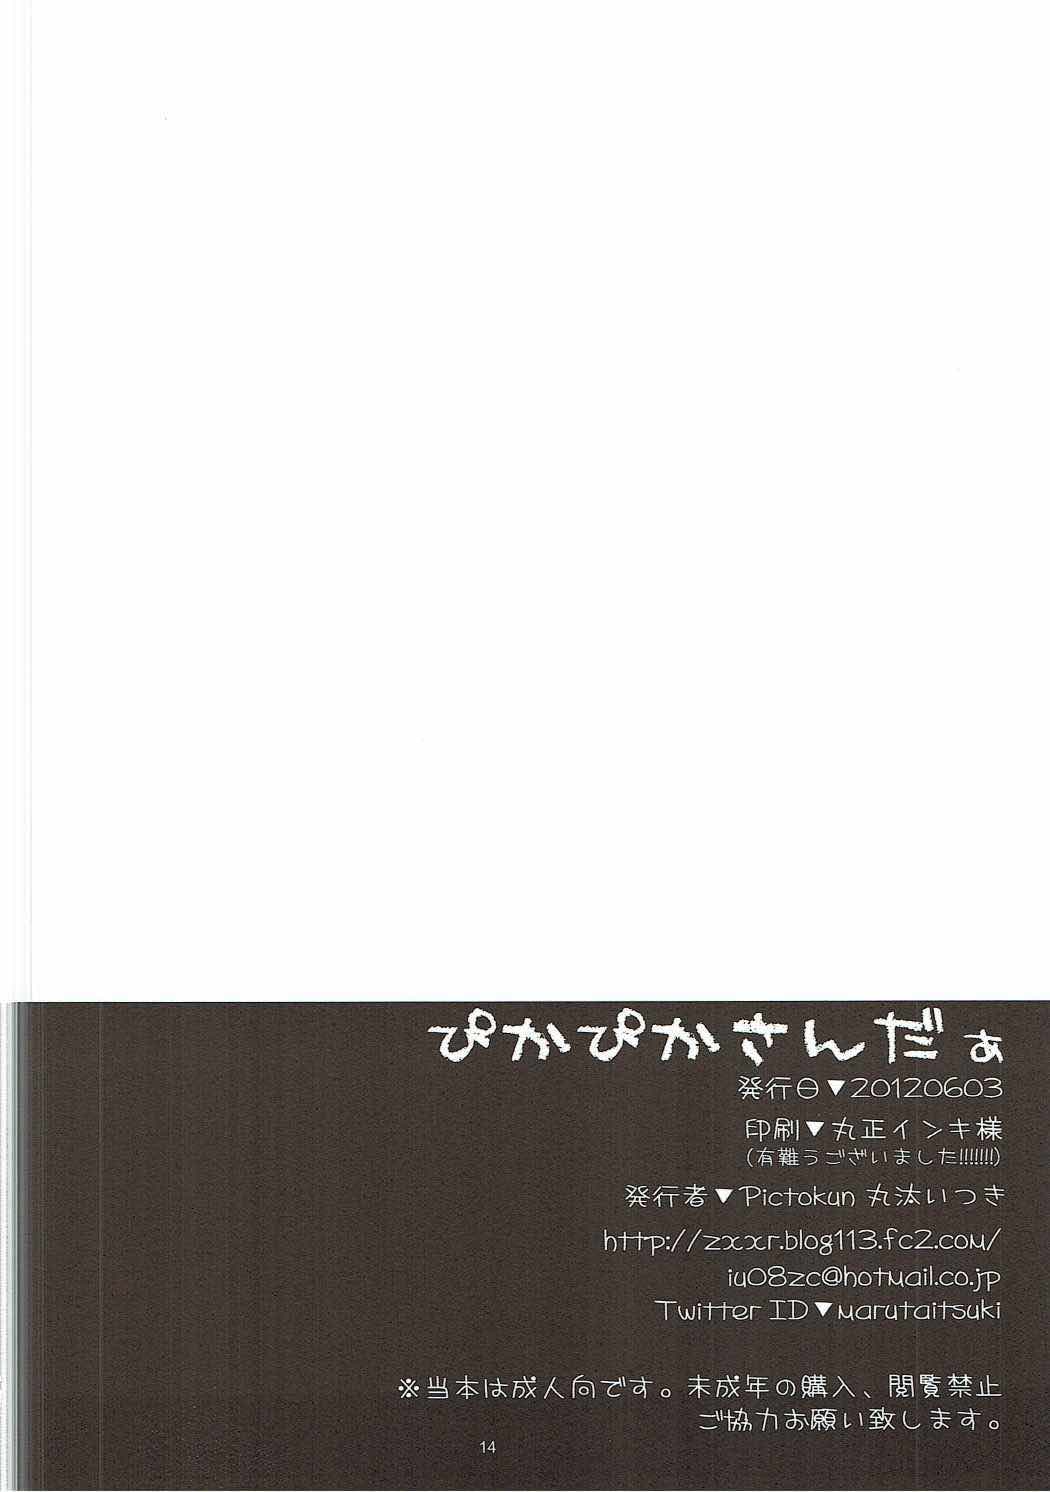 (ComiComi16) [Pictokun (Maruta Itsuki)] Pikapika Thunder (Smile Precure!) page 13 full